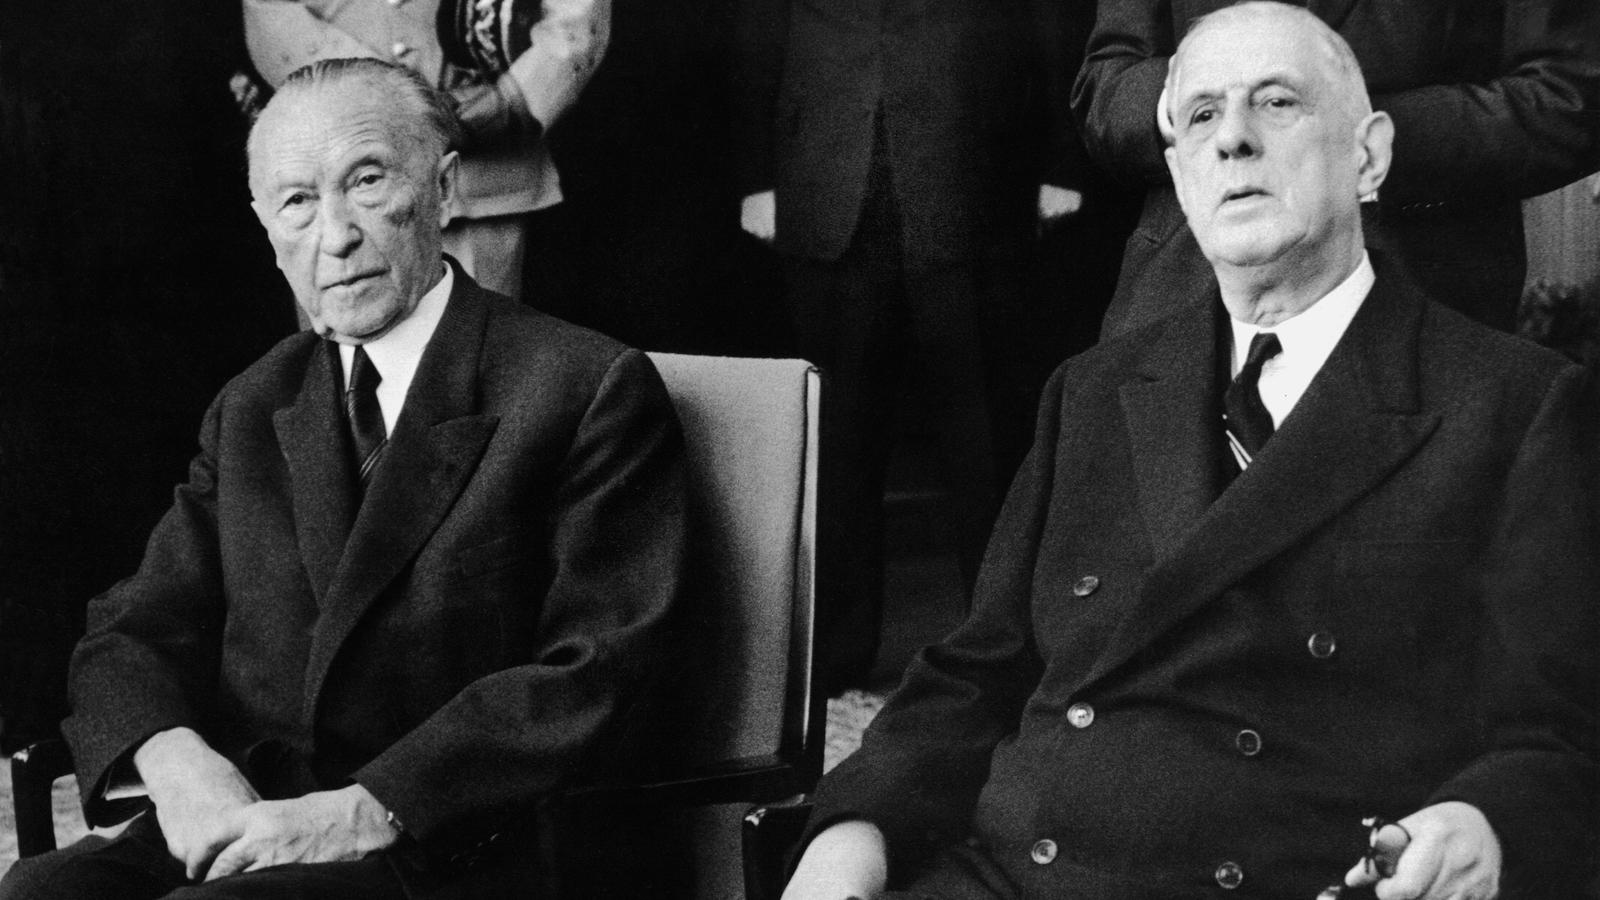 ARCHIV - Der französische Staatspräsident Charles de Gaulle (r) sitzt am 3. Juni 1962 während der Begrüßungszeremonie im Rathaus von Köln neben Bundeskanzler Konrad Adenauer (l). Foto: Egon Steiner (zu dpa-Serie Sechs Jahrzehnte vom 24.02.) nur s/w  